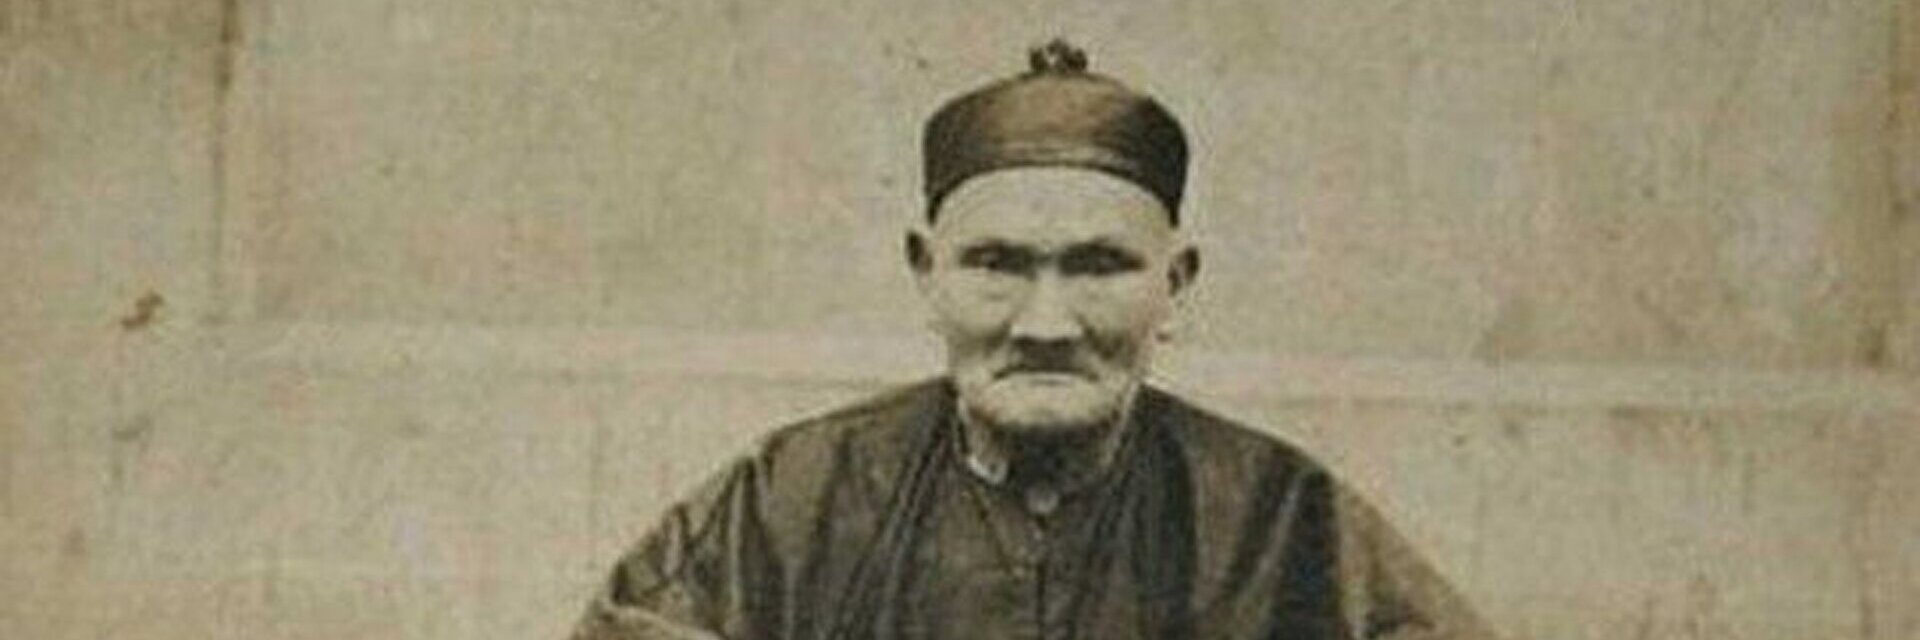 Живущий 600 лет. Ли Цинъюнь (1677—1933). Ли Цинъюнь долгожитель. Ли Чинг-Юн долгожитель. Ли Цинъюнь 256 лет.